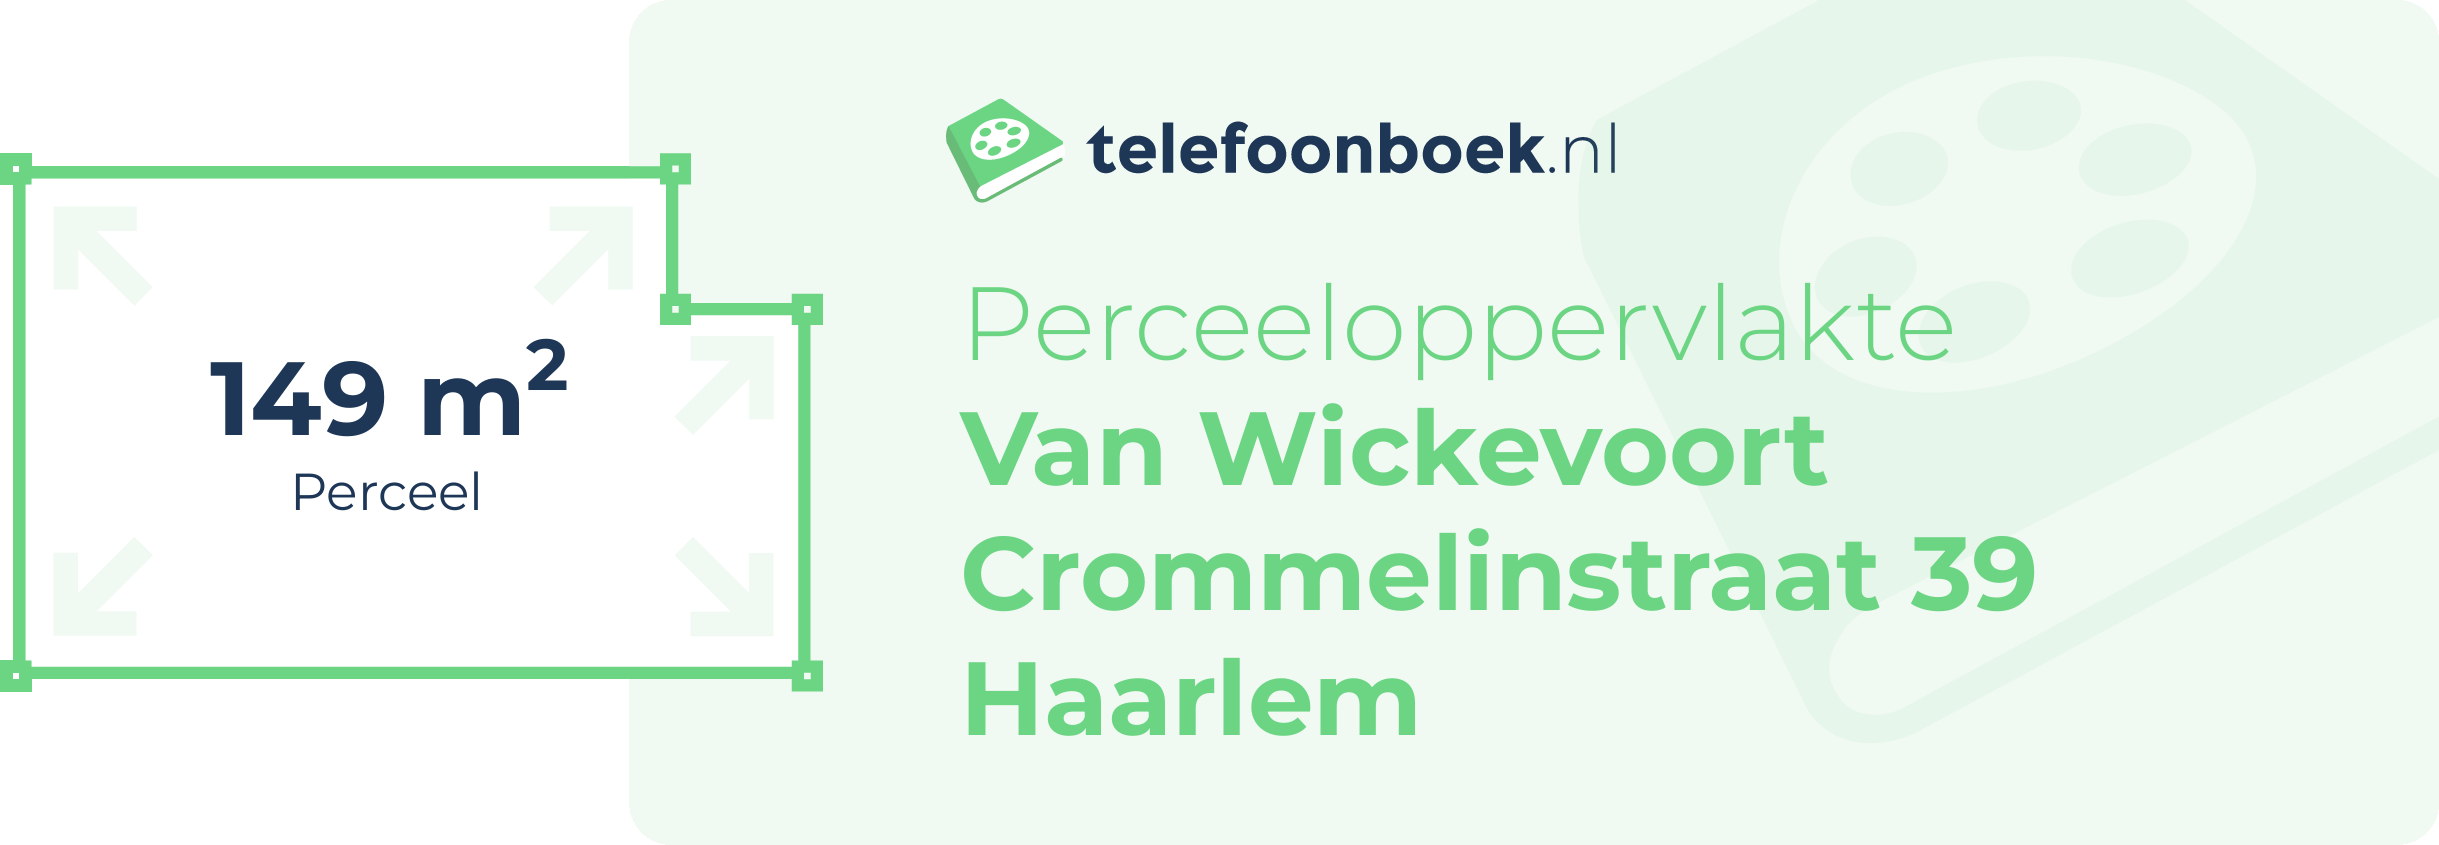 Perceeloppervlakte Van Wickevoort Crommelinstraat 39 Haarlem